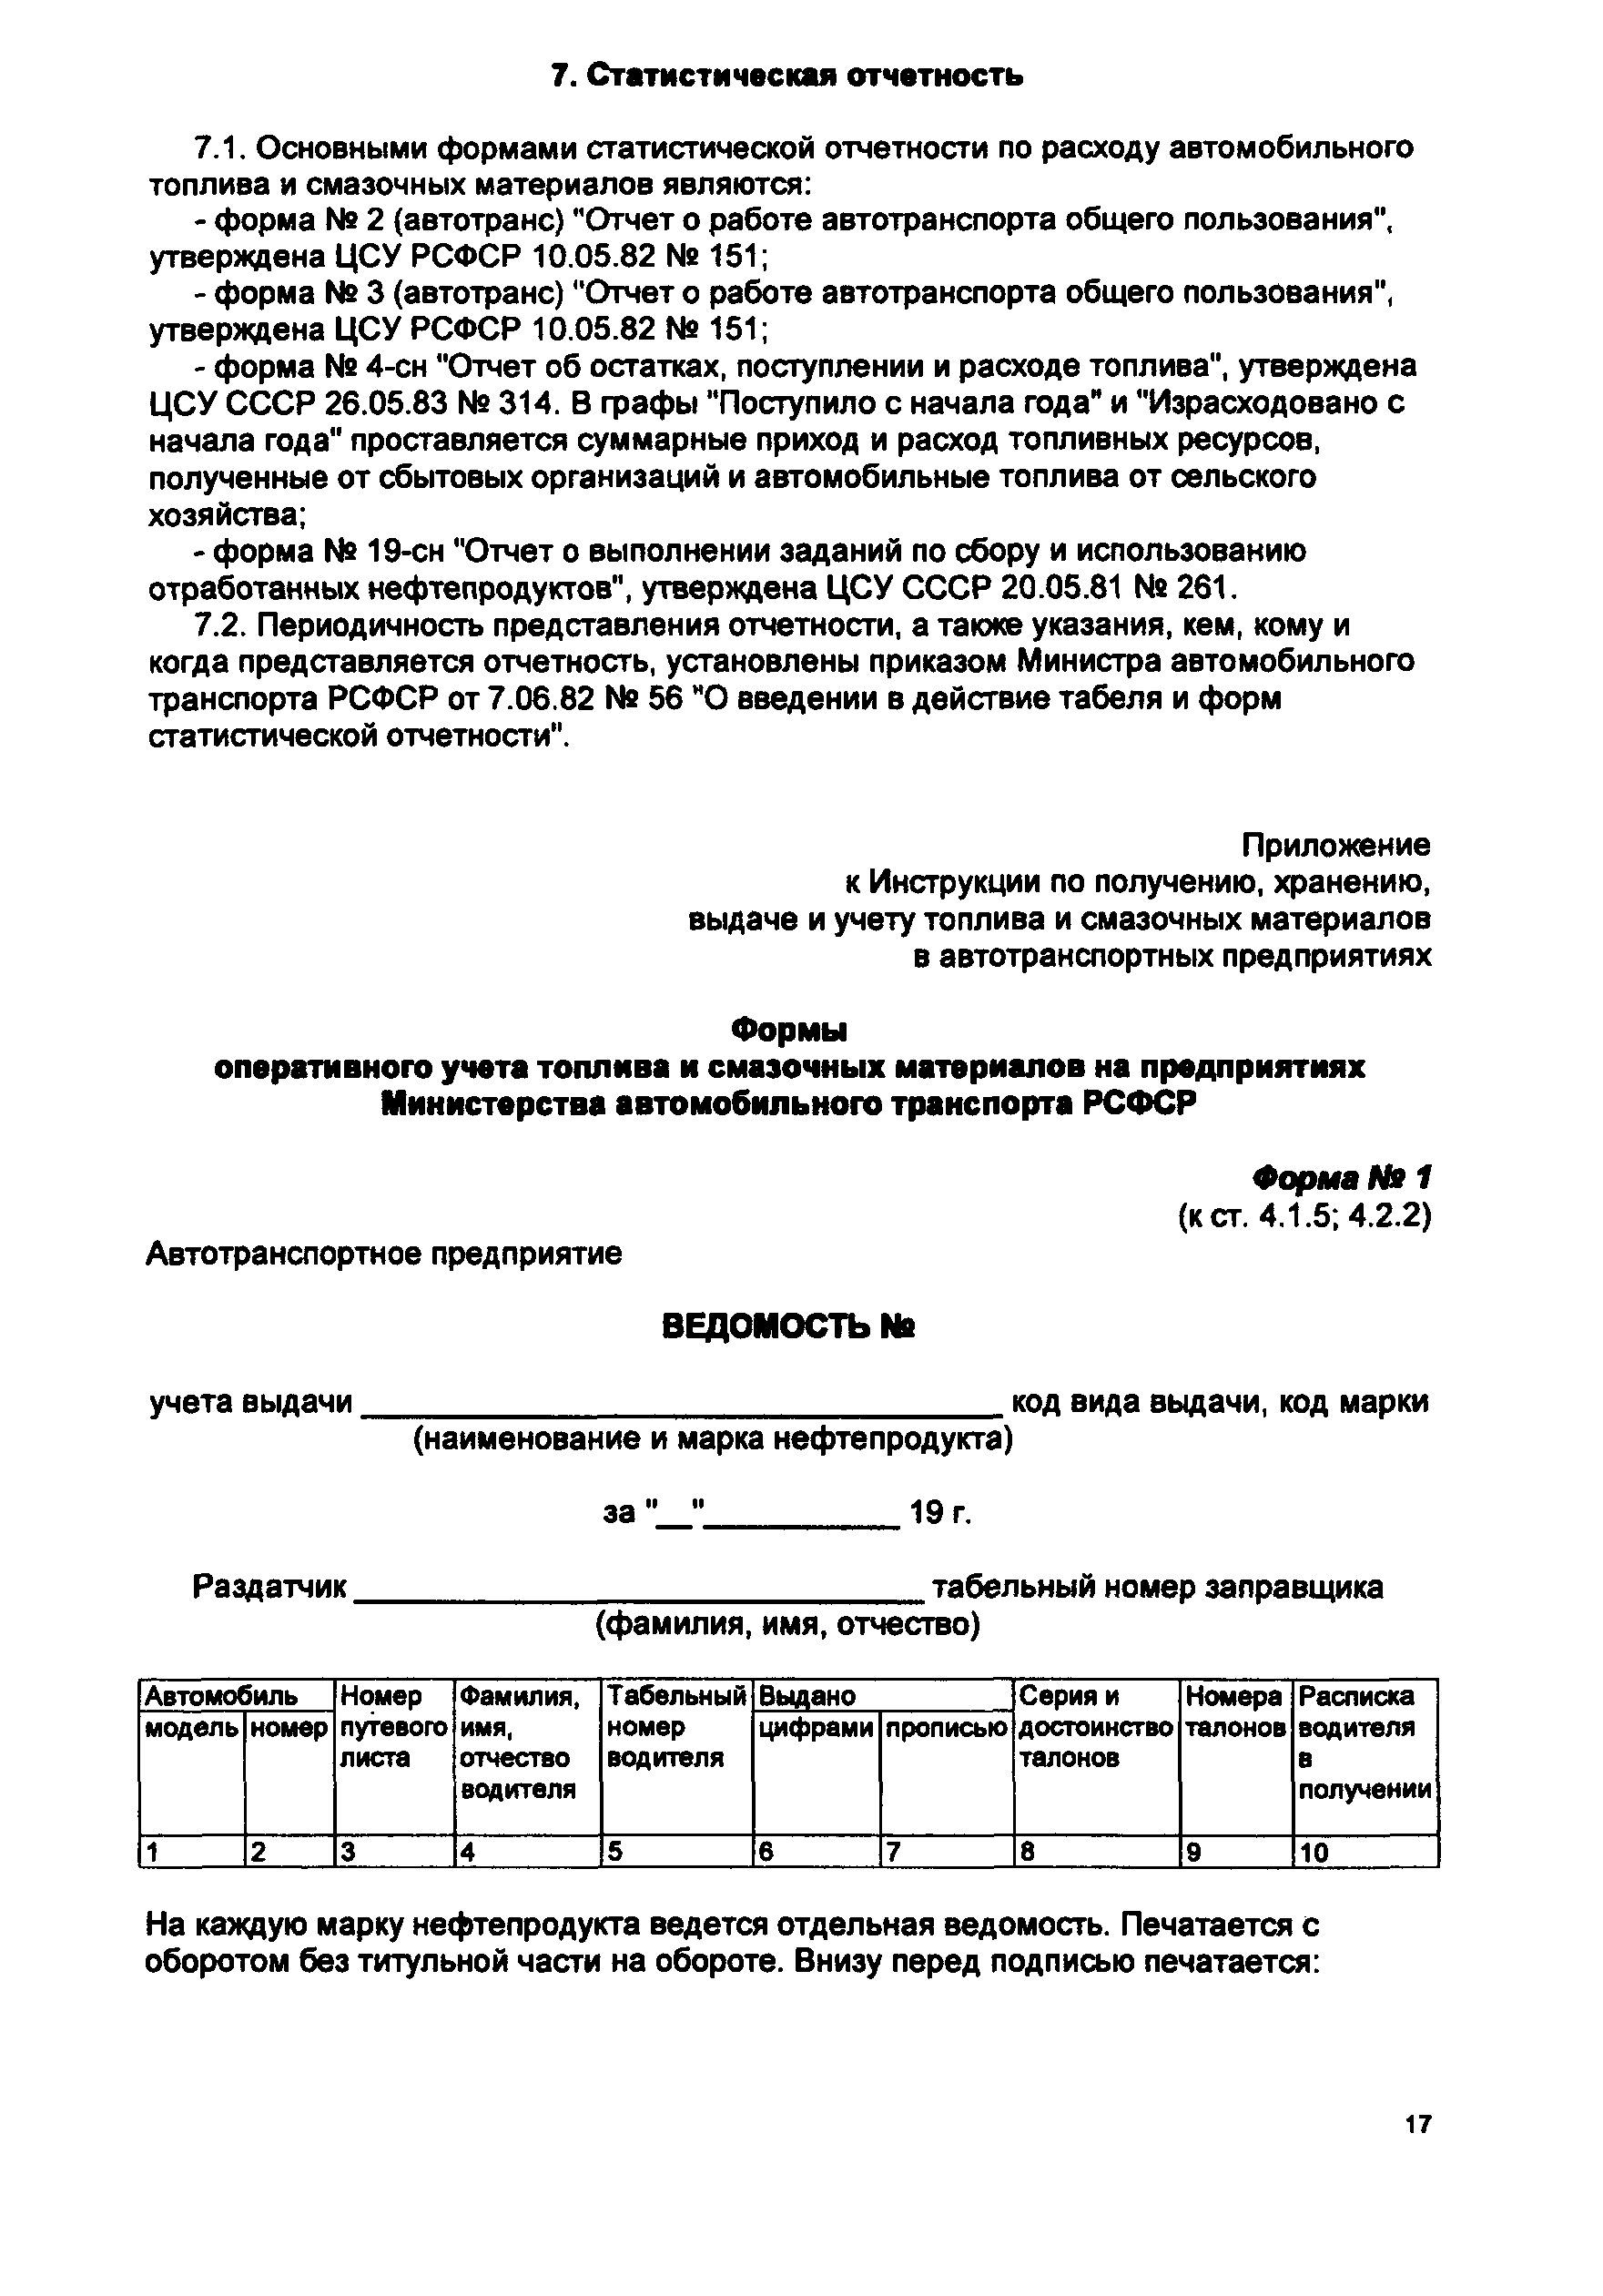 РД 200-РСФСР-12-0053-84